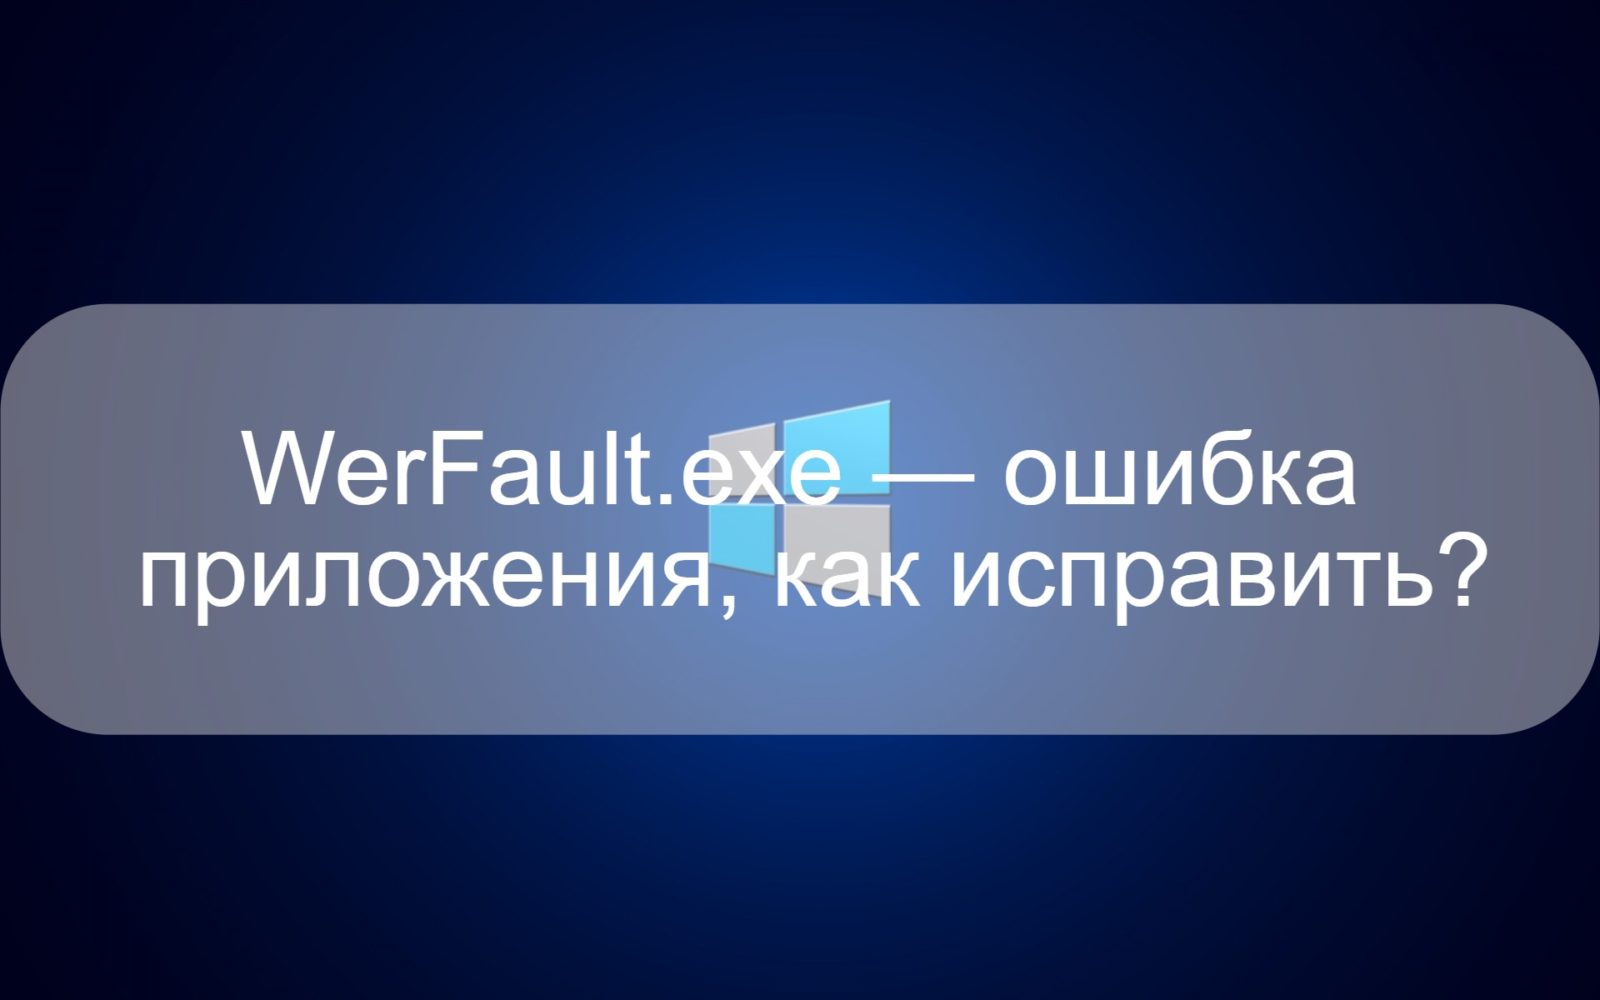 WerFault.exe — ошибка приложения, как исправить?